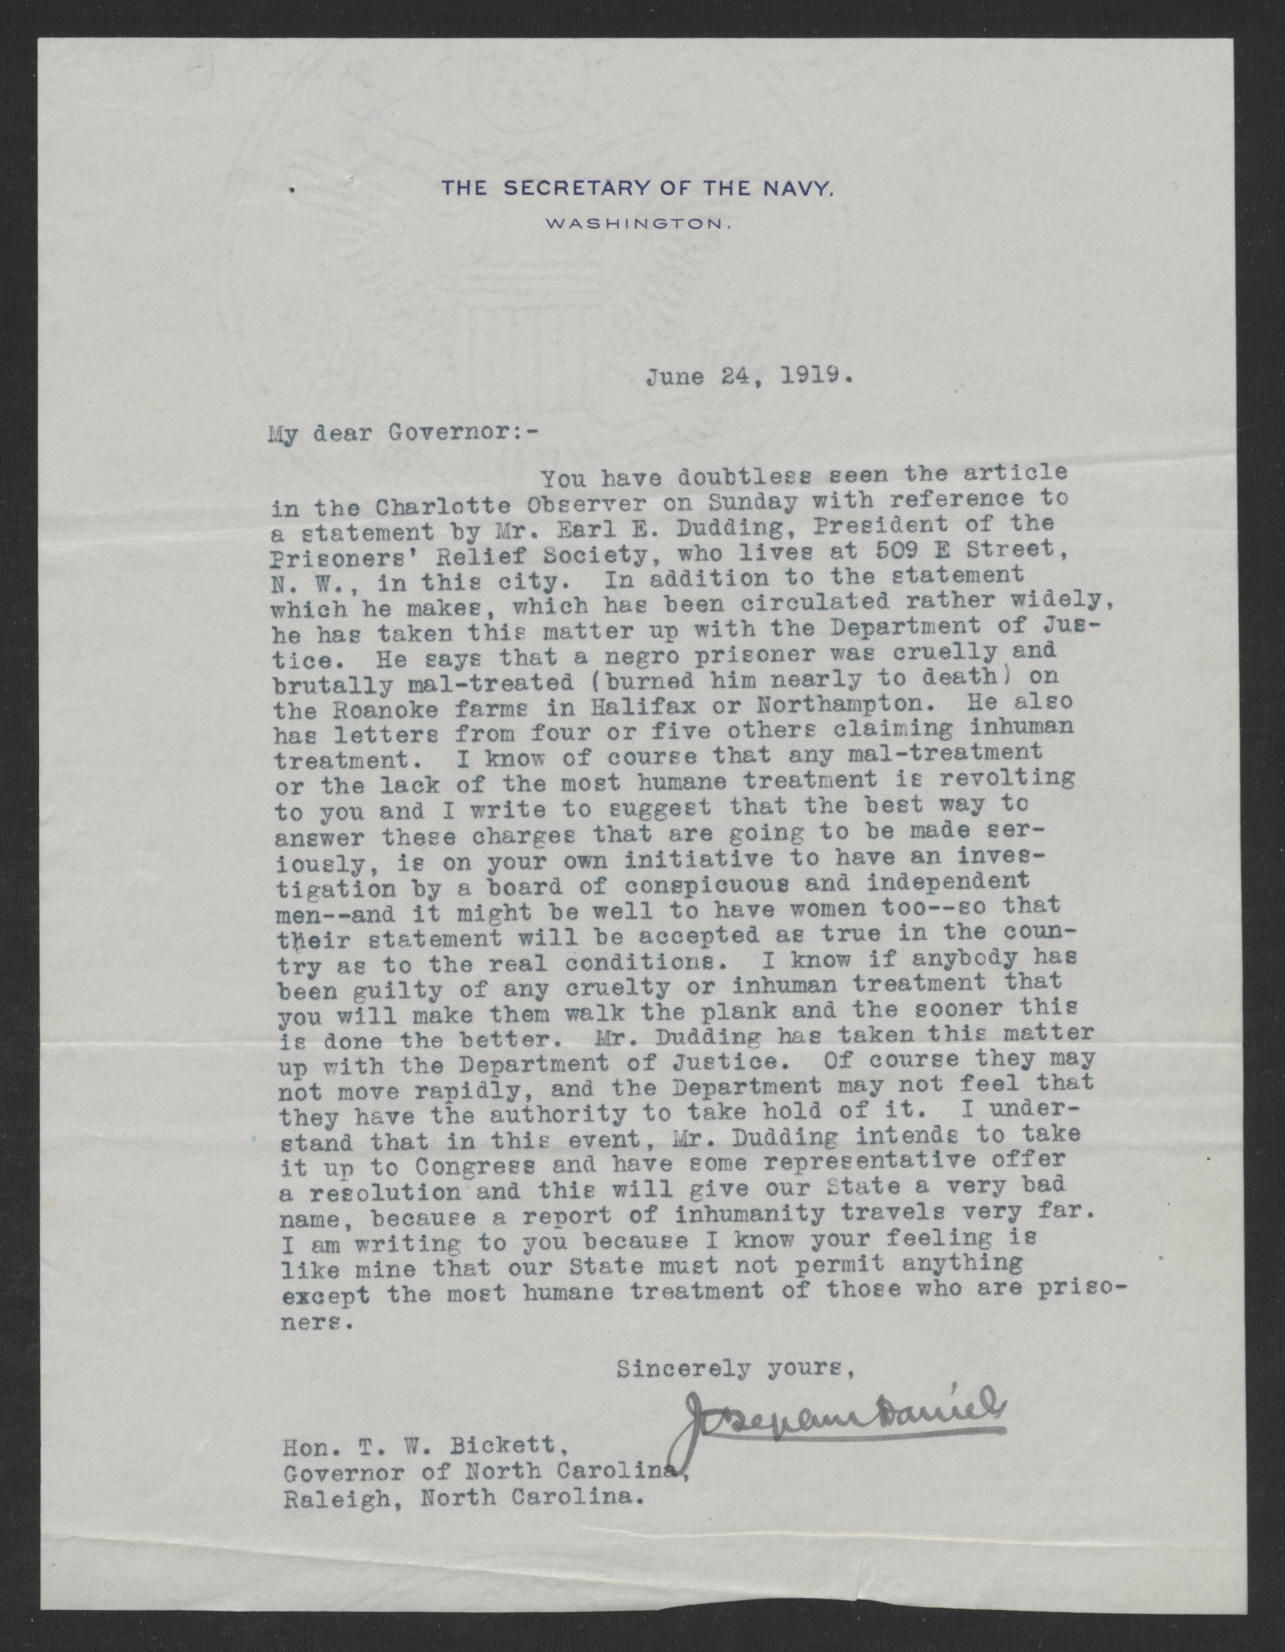 Daniels to Bickett, June 24, 1919